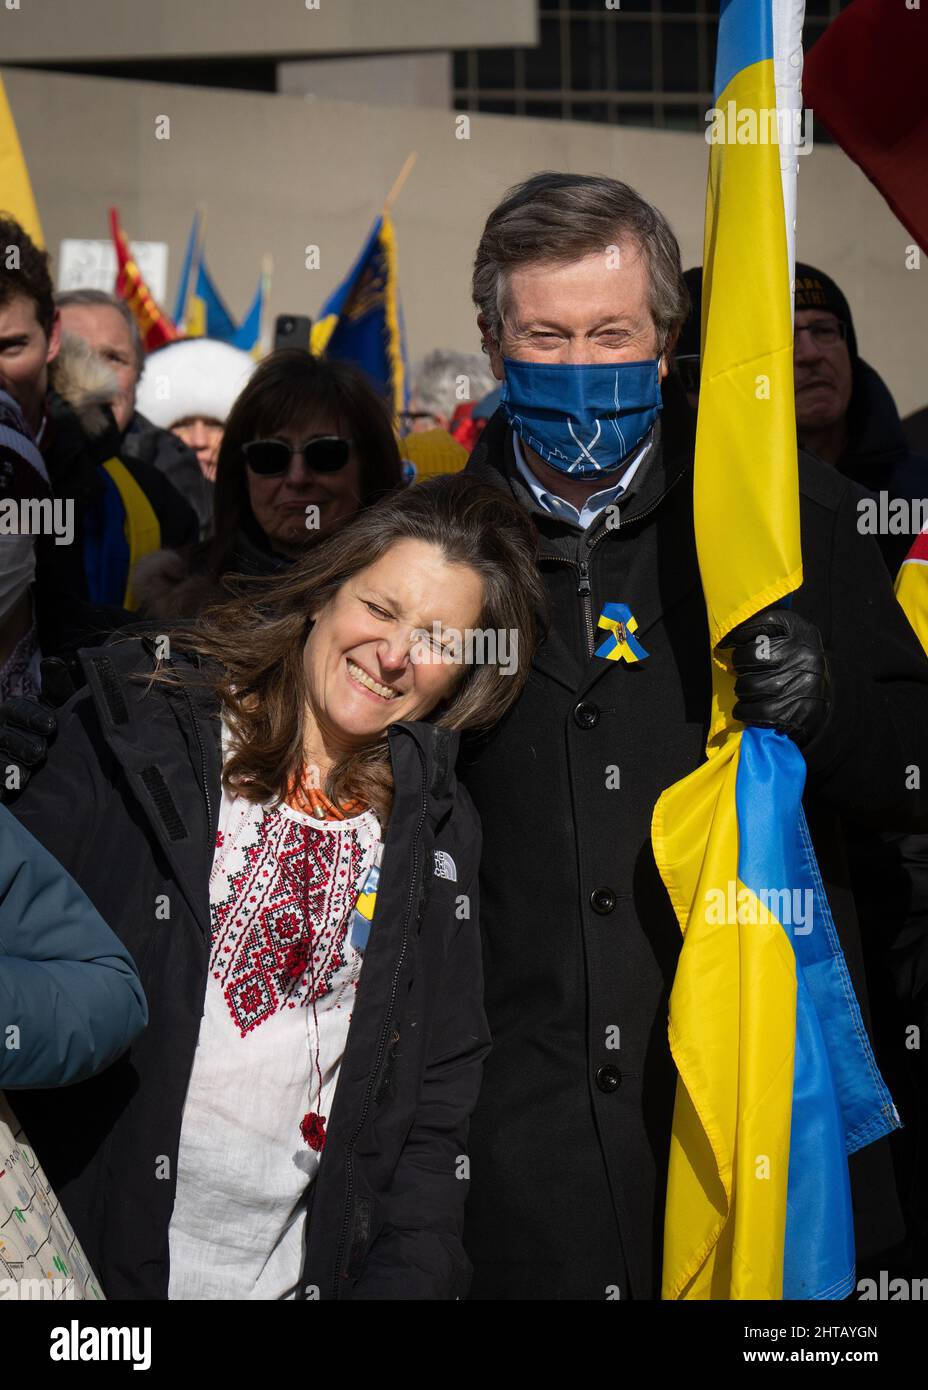 Die liberale Finanzministerin Chrystia Freeland und der Bürgermeister von Toronto, John Tory, treten an einem Stand mit der Ukraine-Veranstaltung auf dem Nathan Phillips Square in Toronto auf. Stockfoto